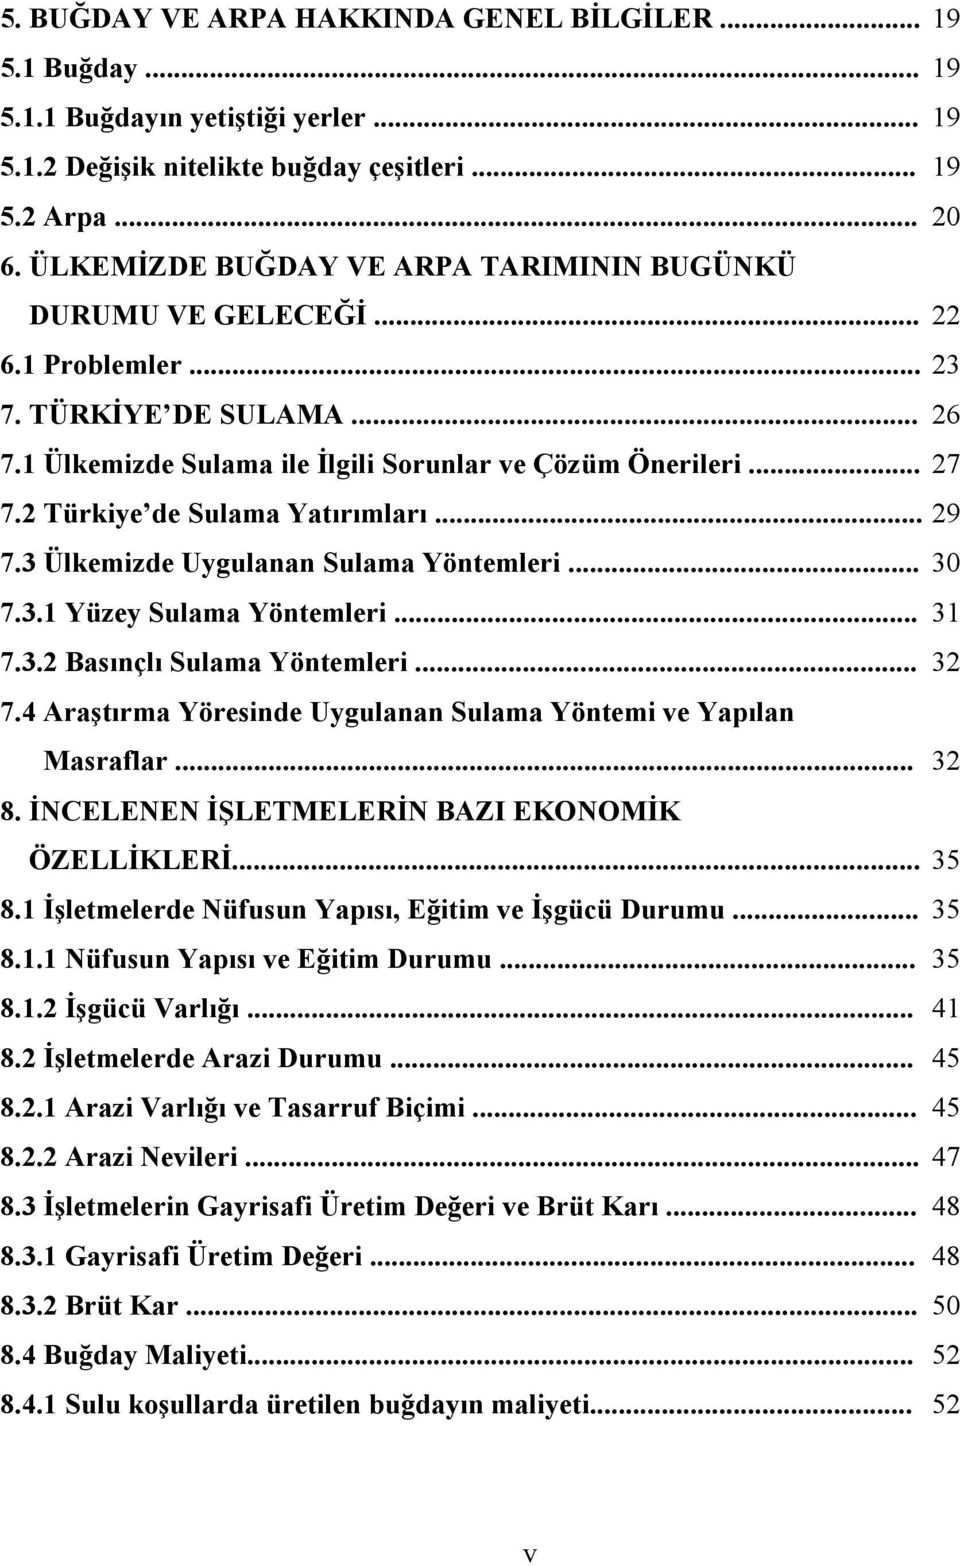 2 Türkiye de Sulama Yatırımları... 29 7.3 Ülkemizde Uygulanan Sulama Yöntemleri... 30 7.3.1 Yüzey Sulama Yöntemleri... 31 7.3.2 Basınçlı Sulama Yöntemleri... 32 7.